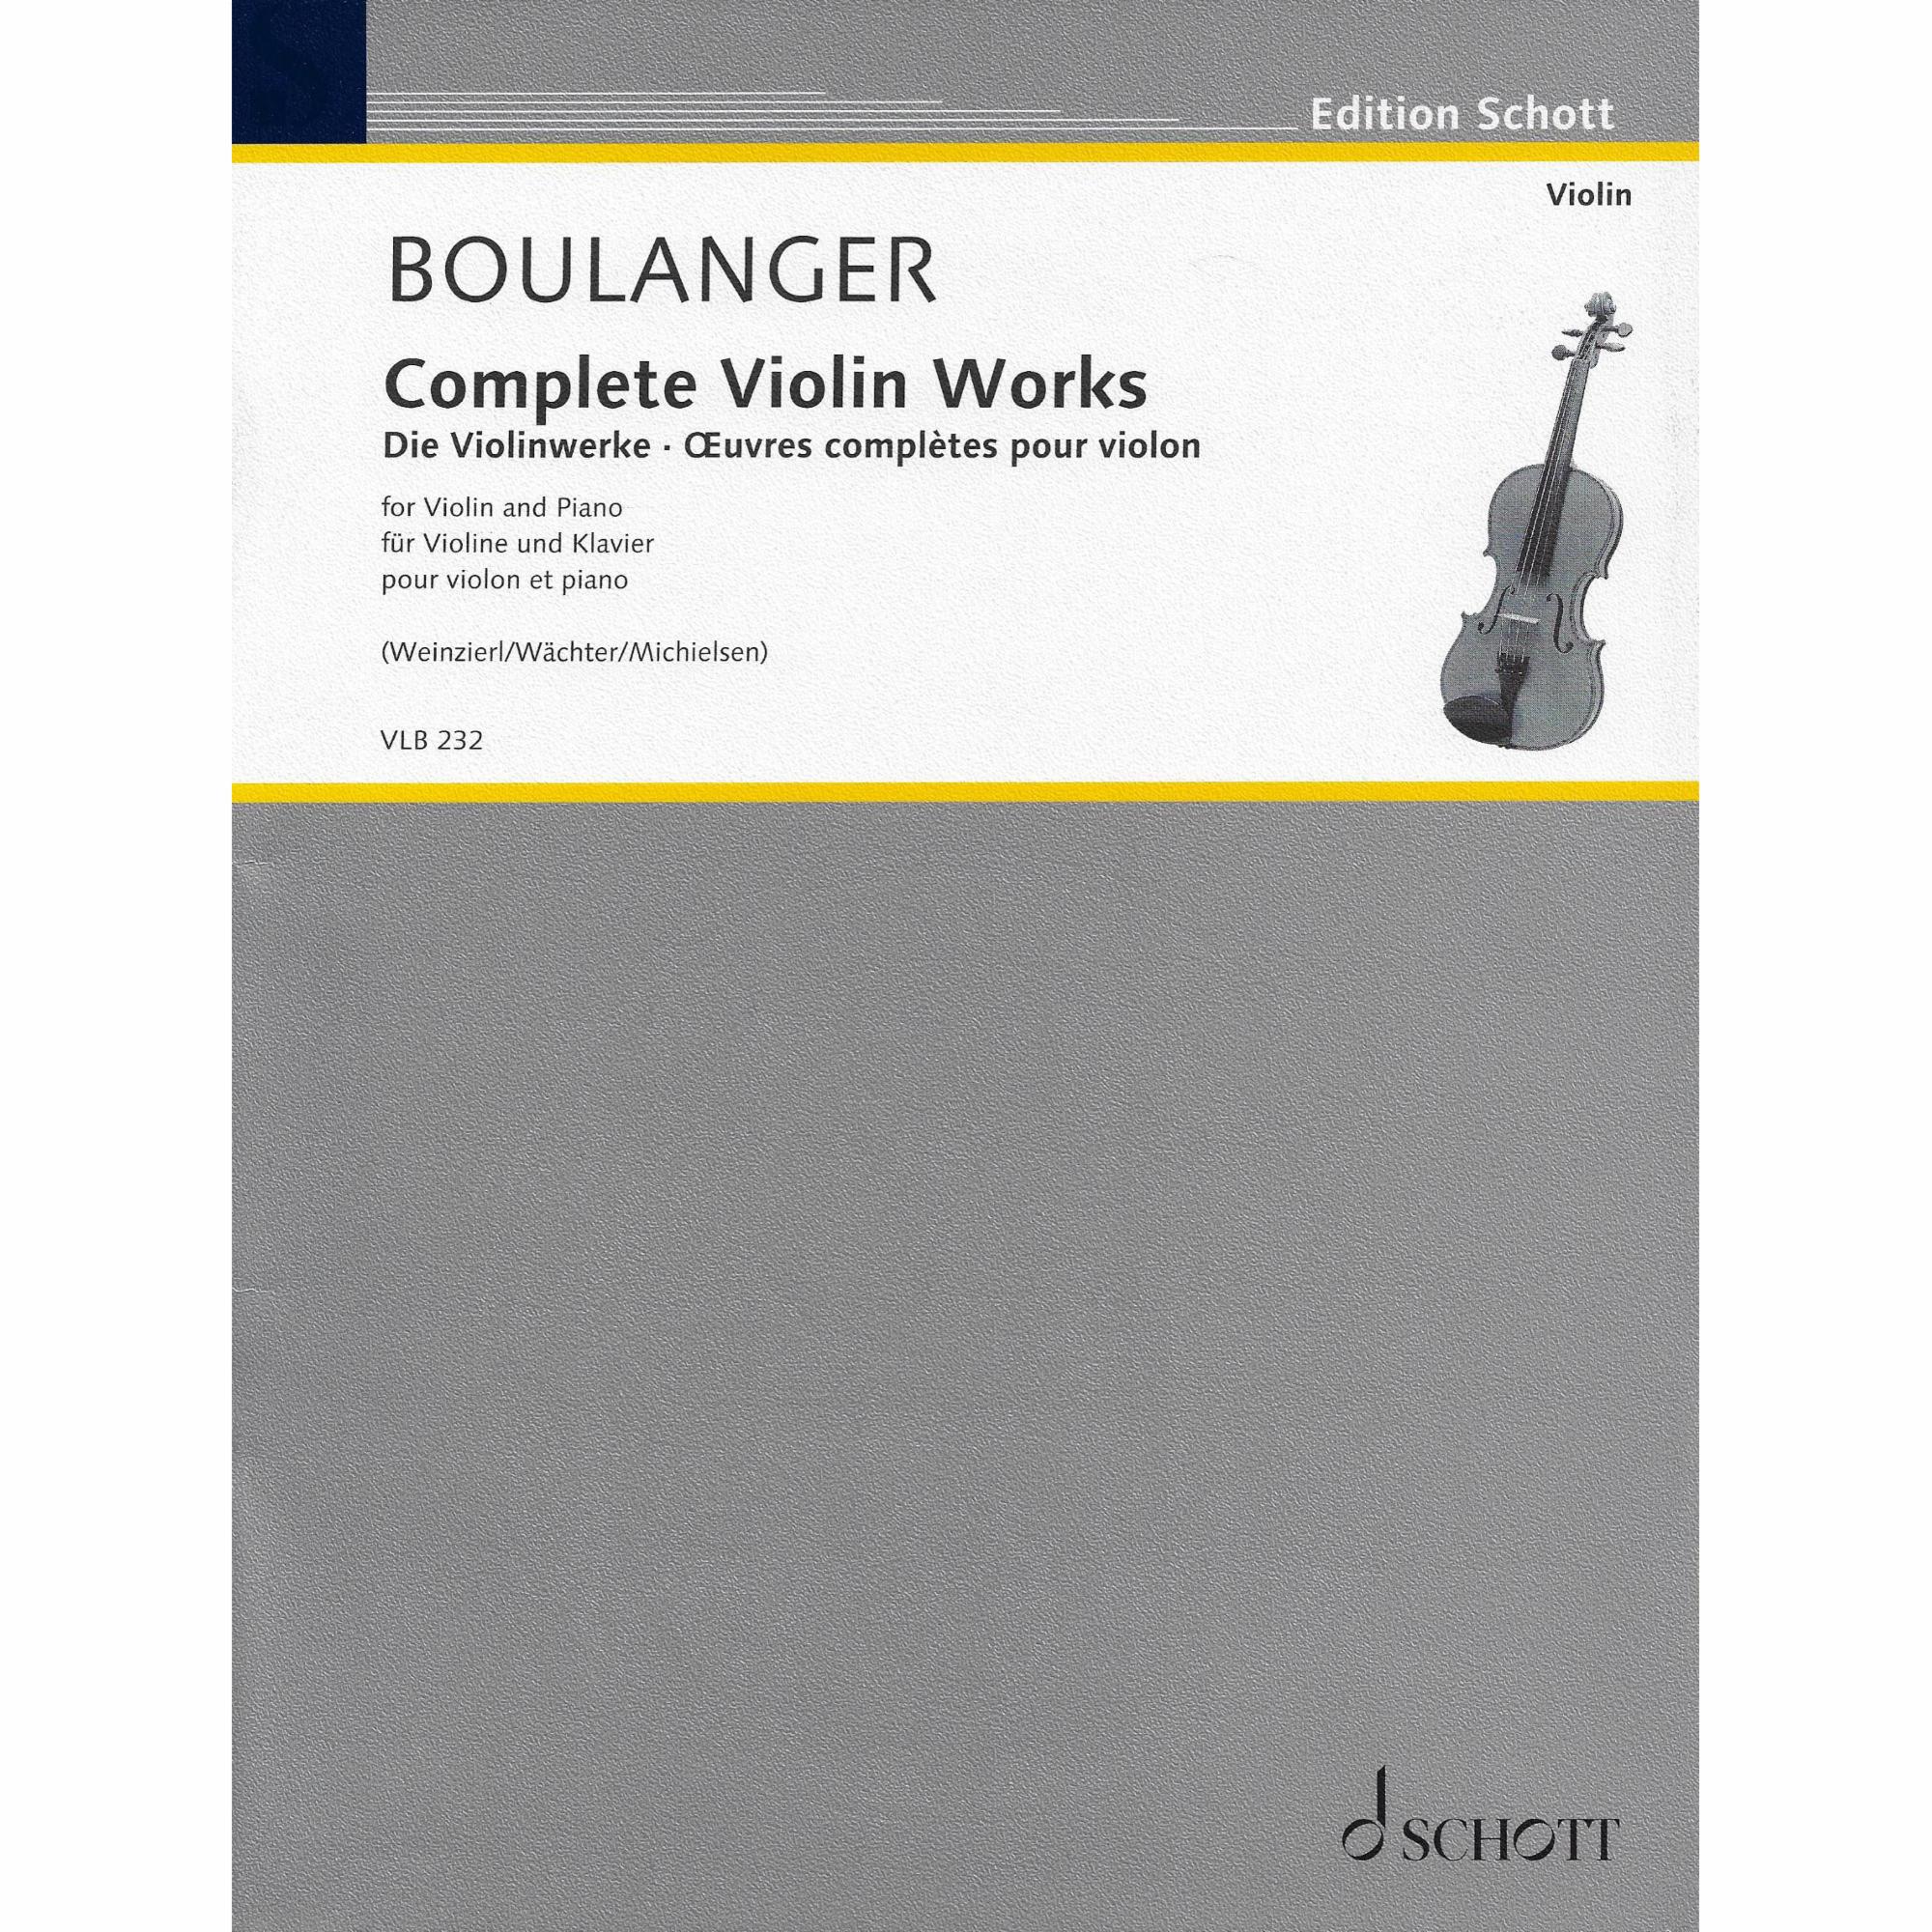 Boulanger -- Complete Violin Works